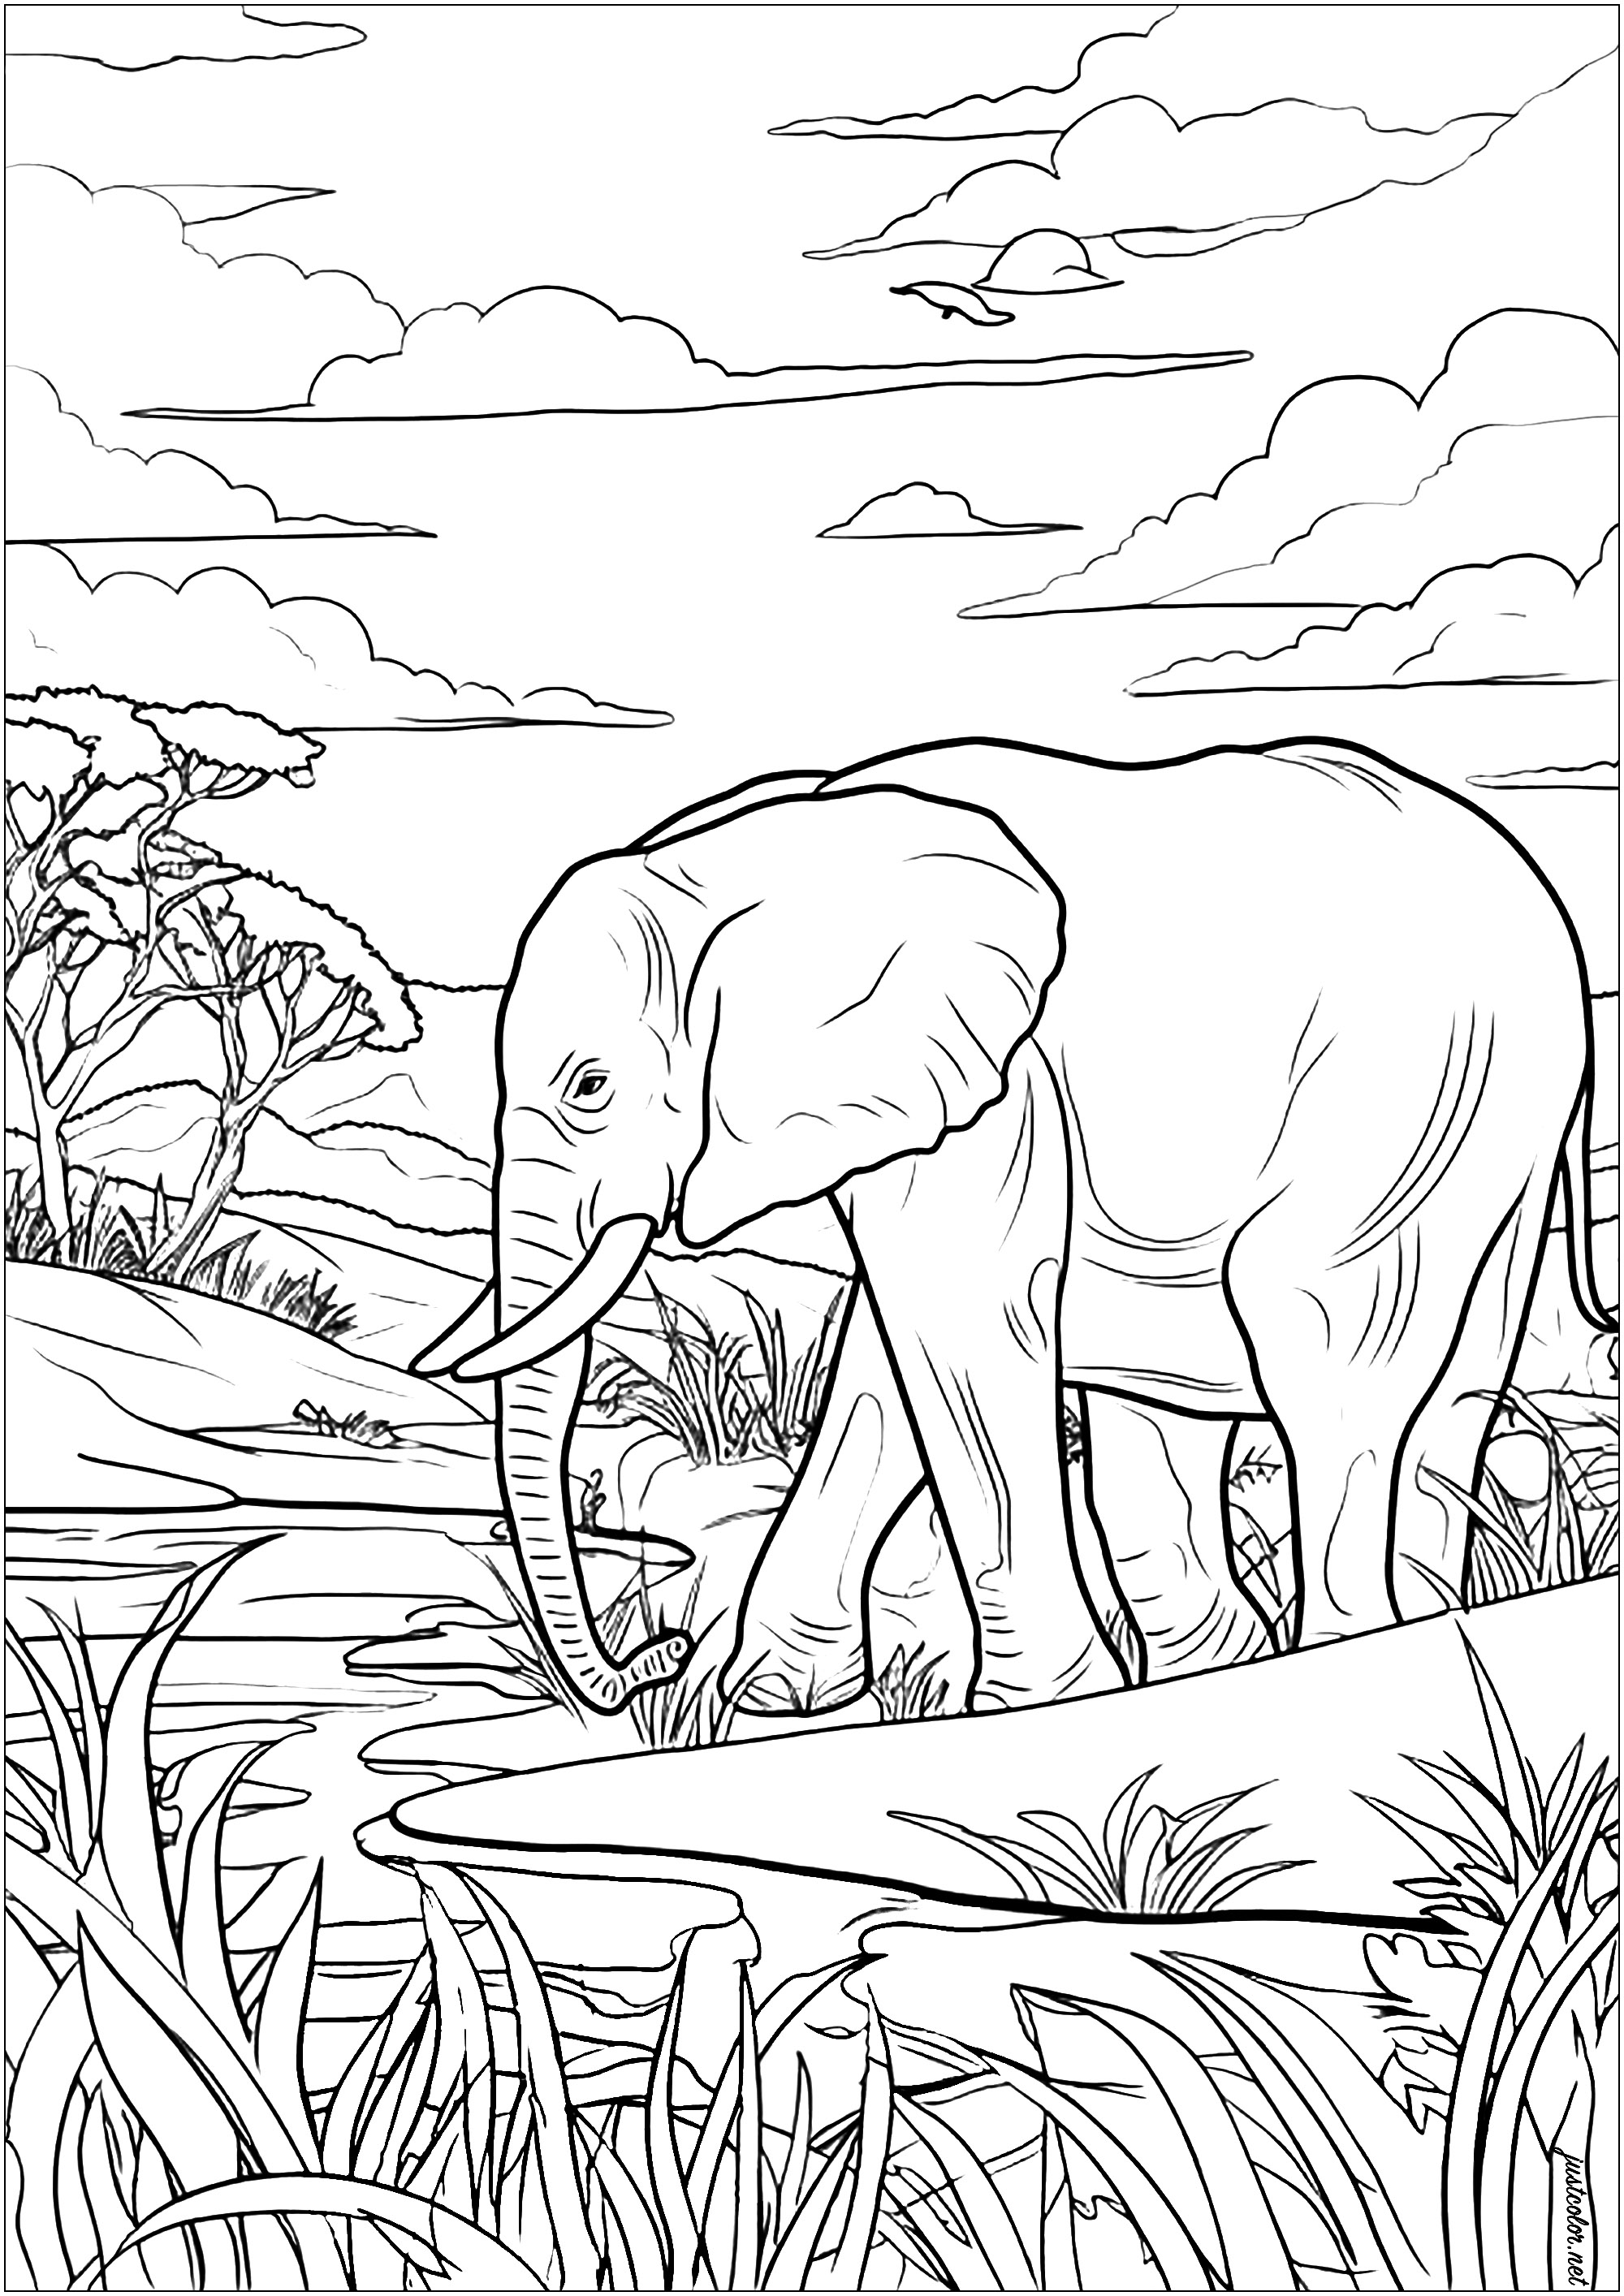 Kolorierung eines alten Elefanten, der sich friedlich durch die afrikanische Savanne bewegt. Eine Färbung Seite voller Details, sehr beruhigend. Dieser weise Dickhäuter schreitet majestätisch voran und betrachtet die Bäume und Gräser um ihn herum.